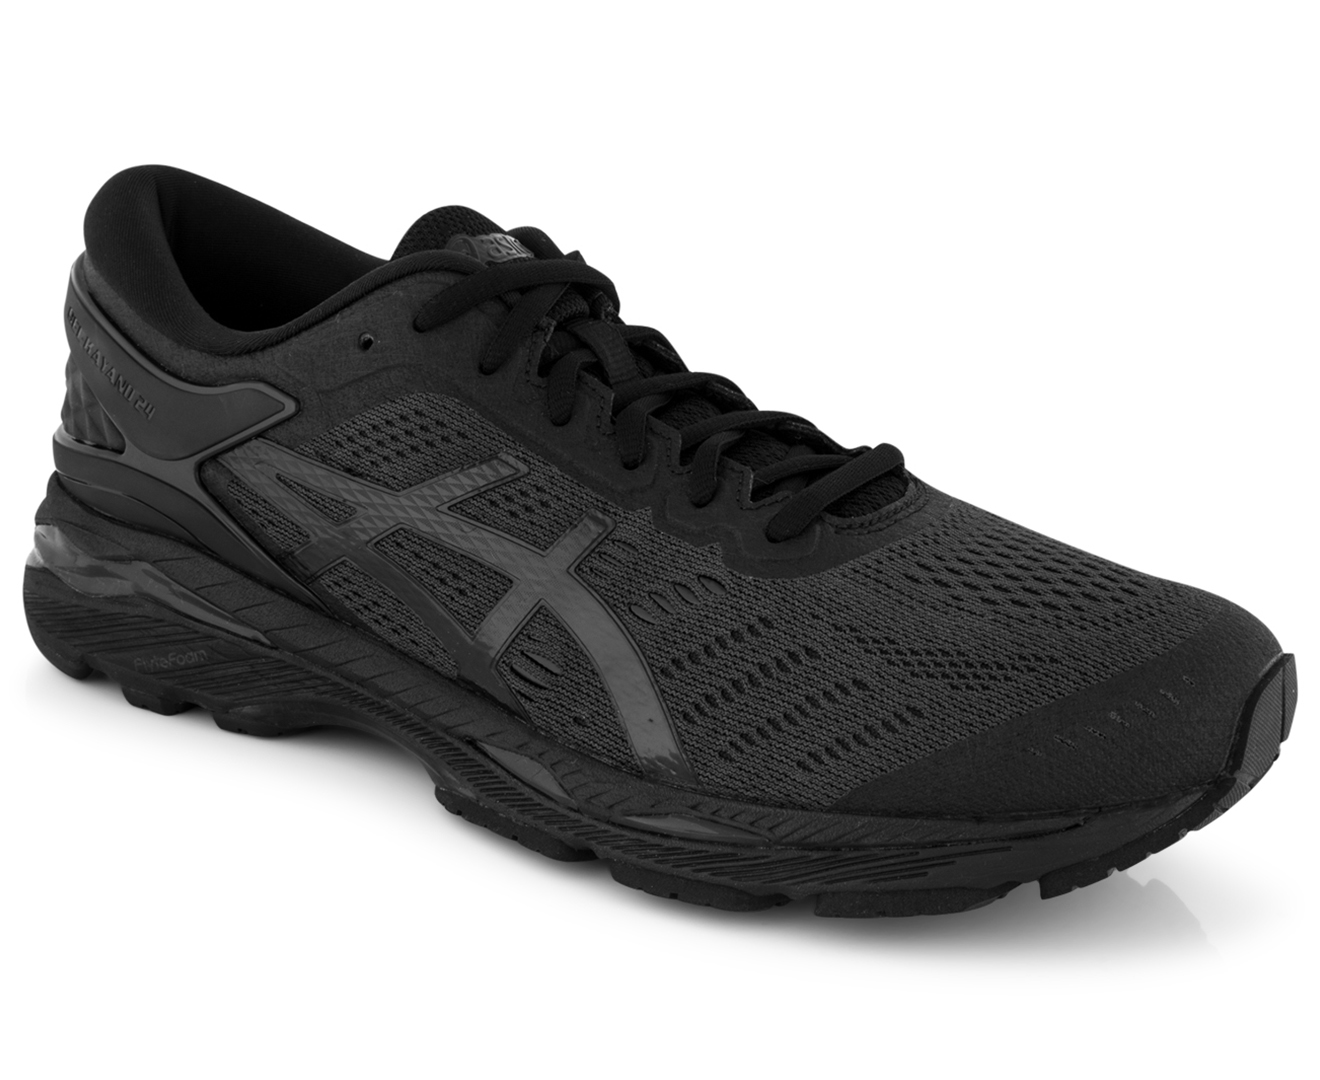 ASICS Men's GEL-Kayano 24 Shoe - Black/Black/Carbon | Catch.com.au